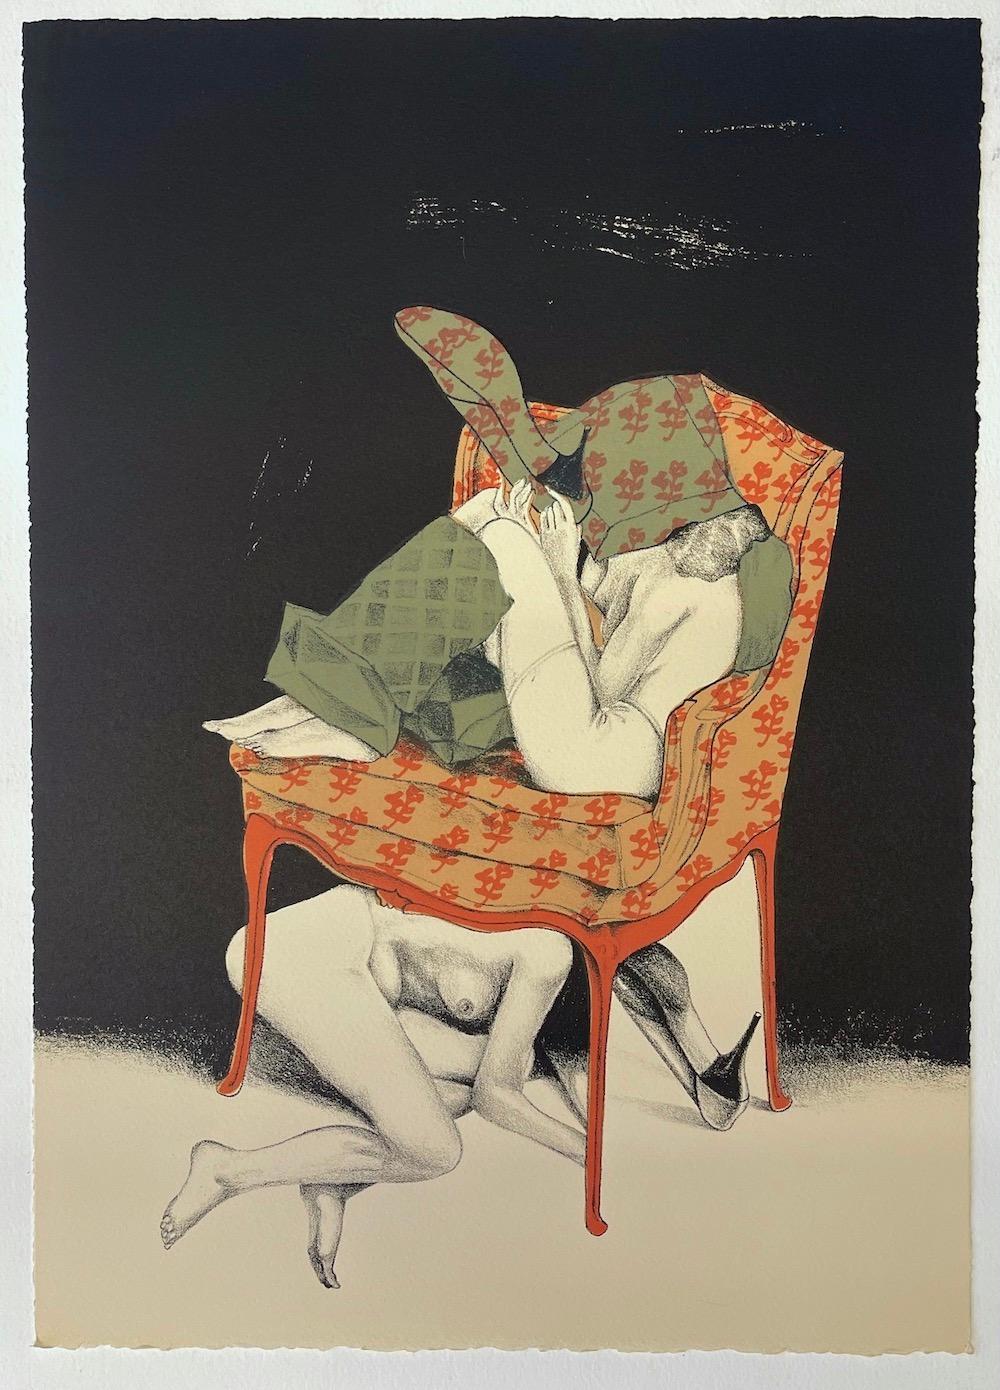  Deux nus posant avec un fauteuil, lithographie de pierres dessinée à la main, talons Stiletto - Réalisme Print par Mel Ramos